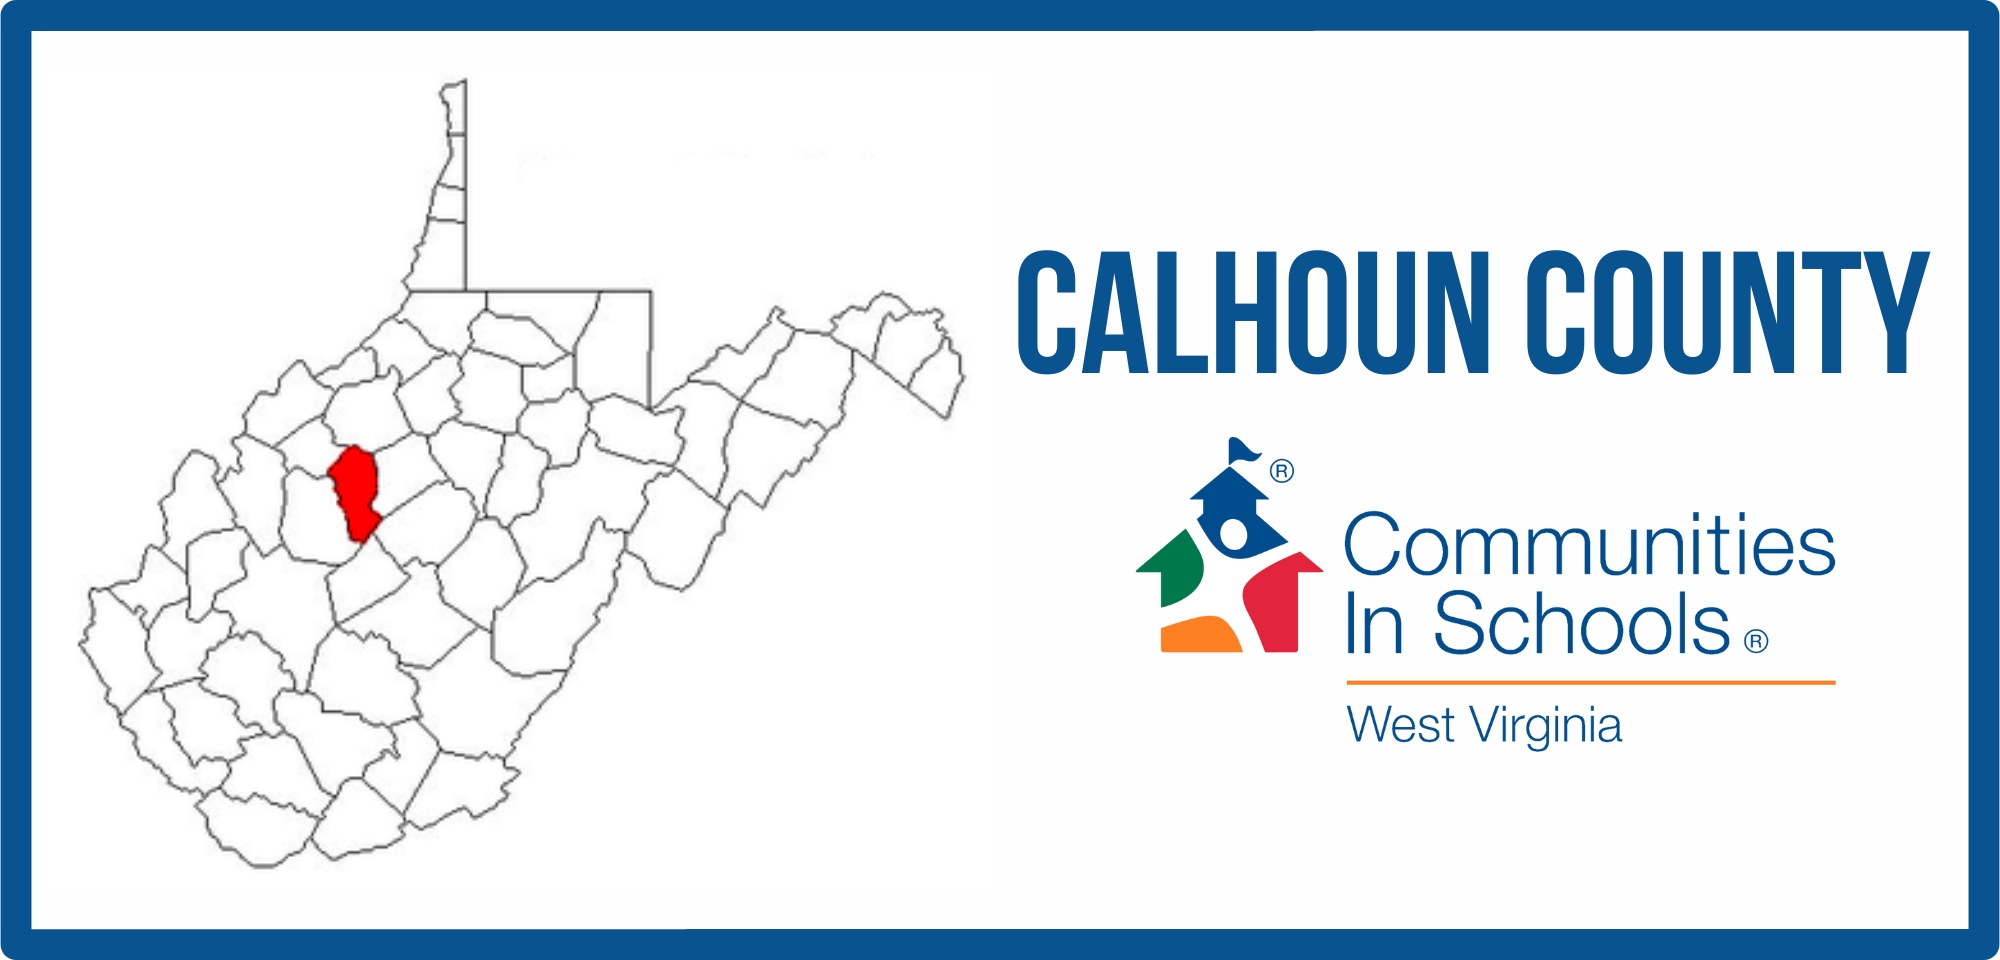 Calhoun County Highlighted on a map of West Virginia